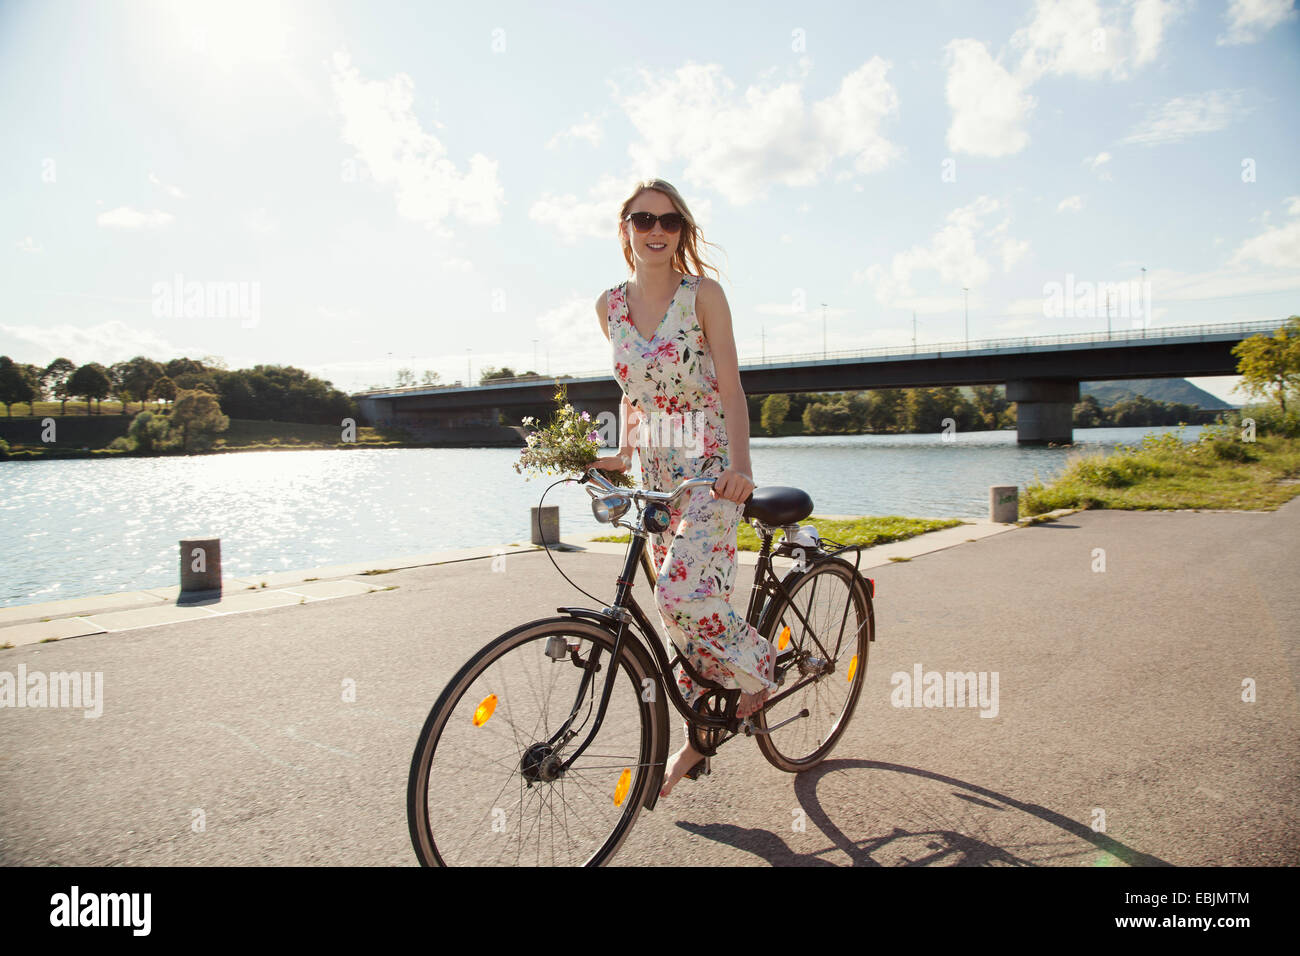 Jeune femme à vélo le long de la rivière, l'île du Danube, Vienne, Autriche Banque D'Images